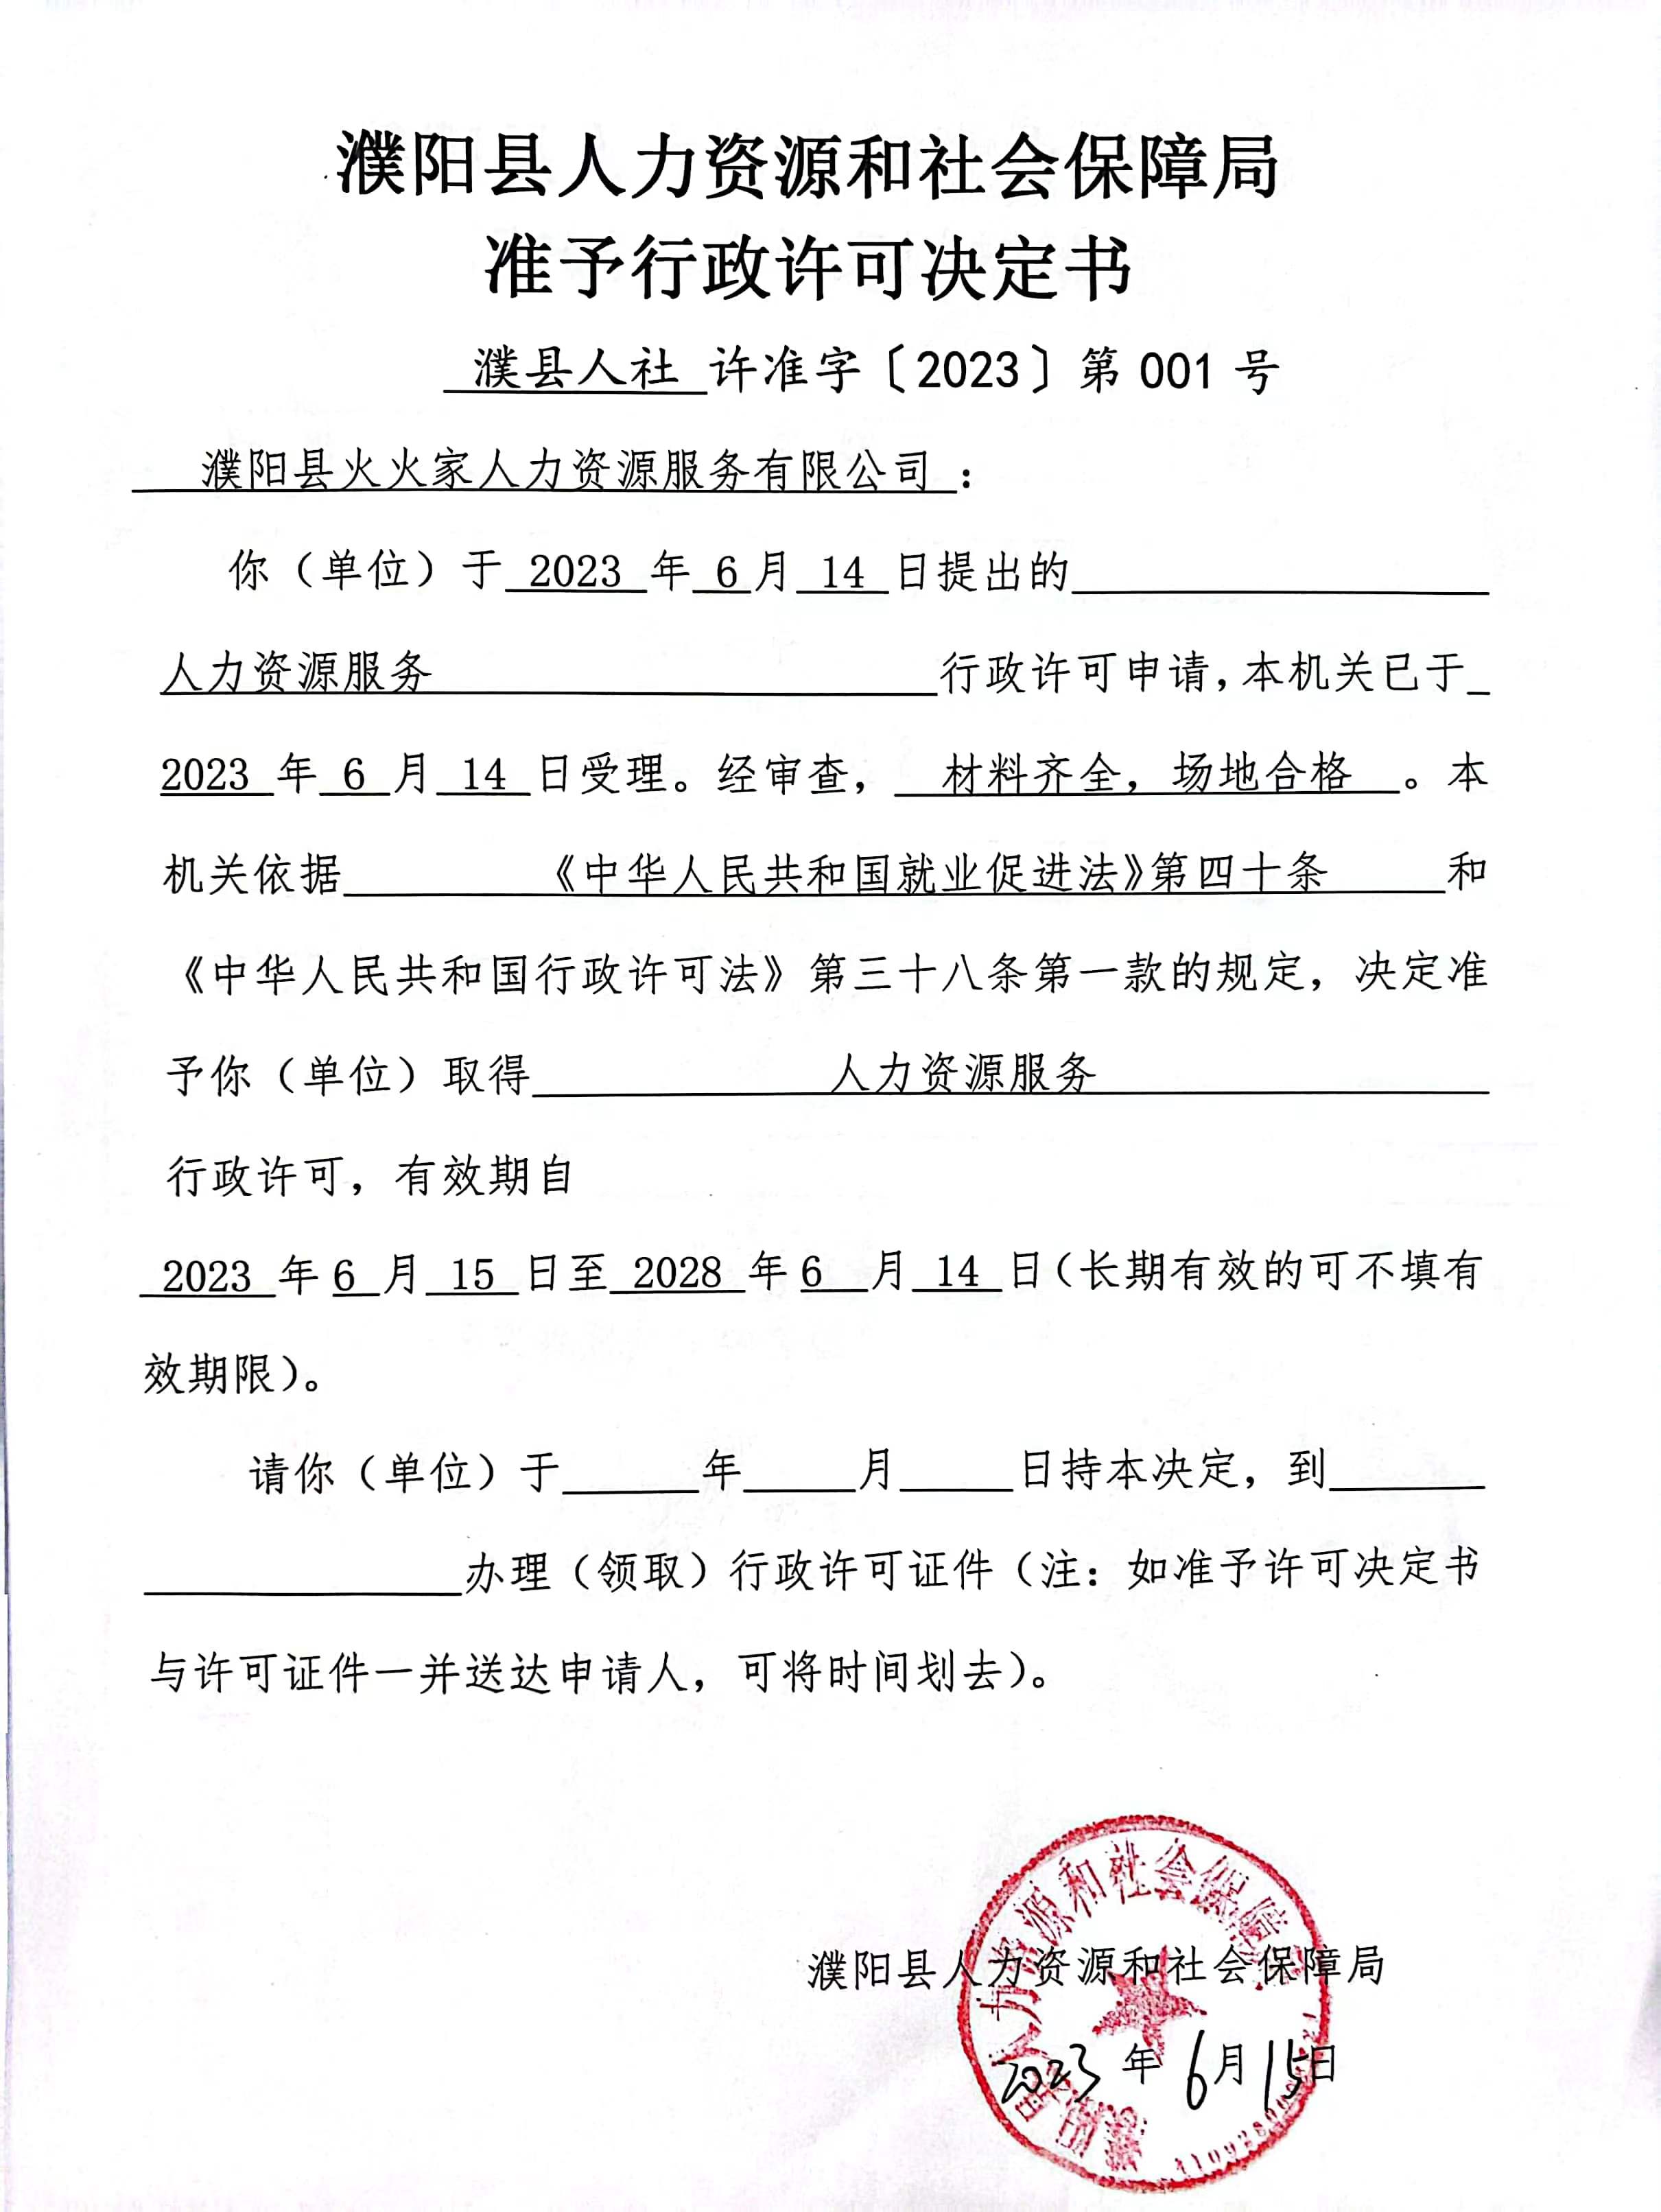 濮阳县火火家人力资源服务有限公司准予行政许可决定书.jpg